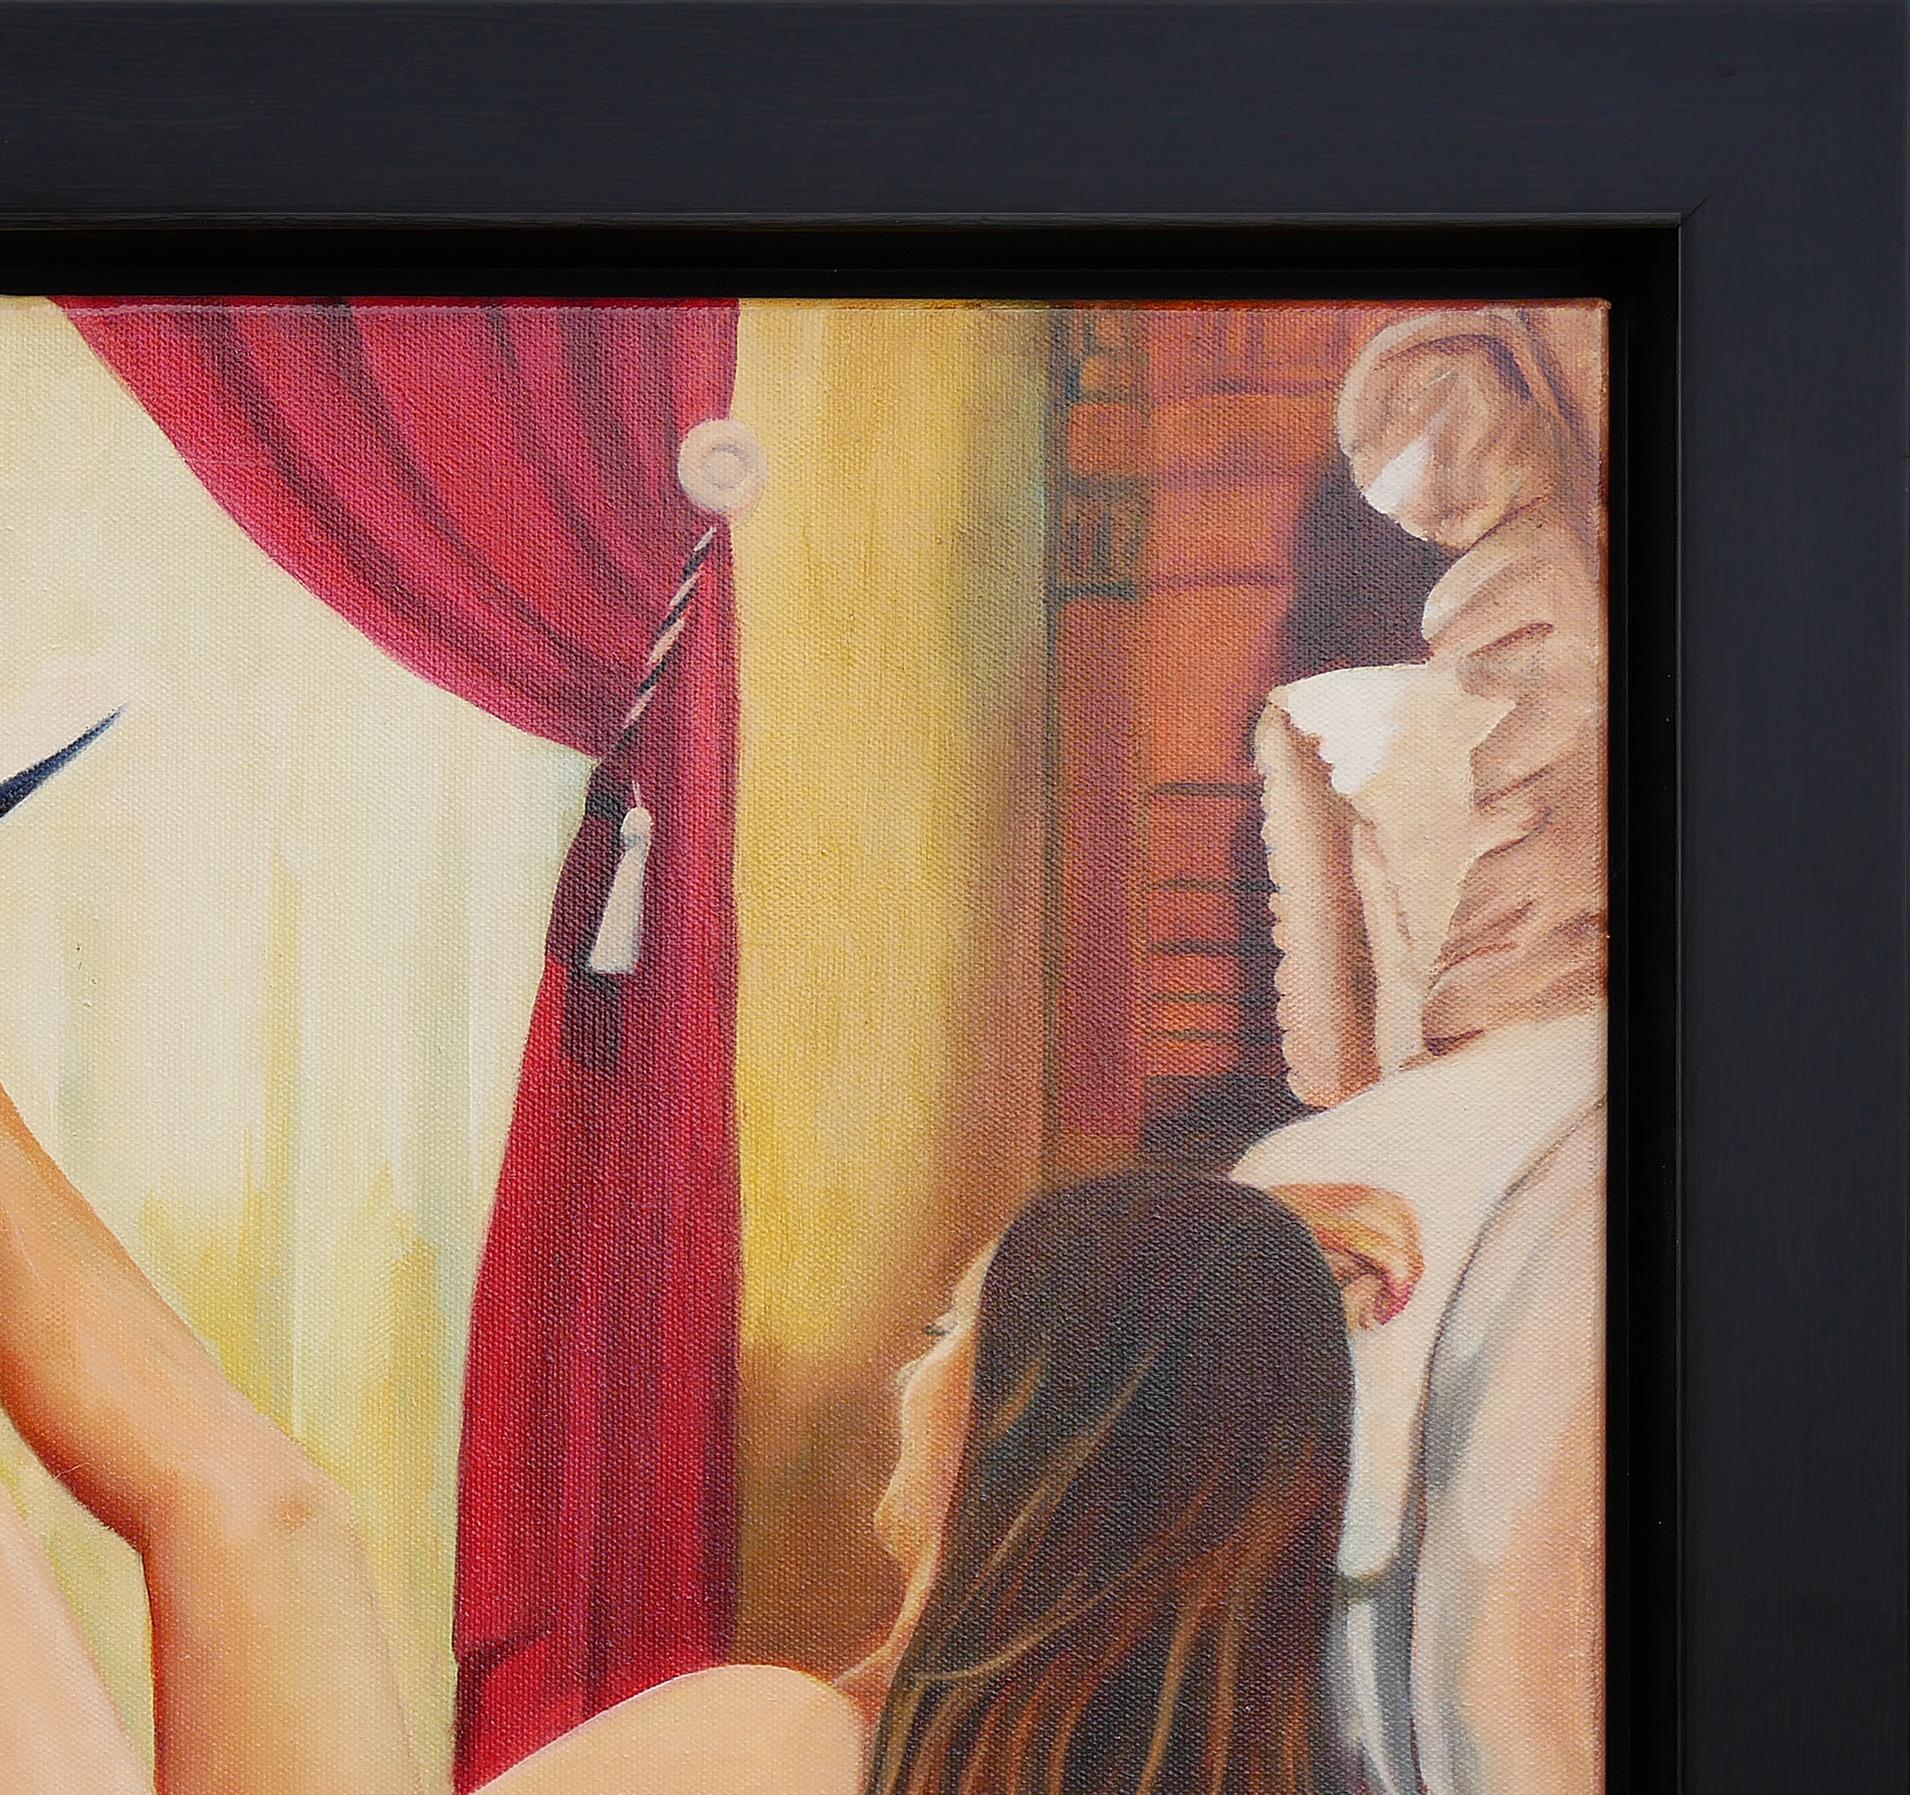 Warmtonige abstrakte zeitgenössische figurative Malerei des texanischen Künstlers Bob Shepherd. Das Gemälde zeigt eine Frau, die einen schwarzen Cowboyhut auf dem Fuß balanciert. Die Frau liegt in einer kleinen Blechwanne, die sich in einem